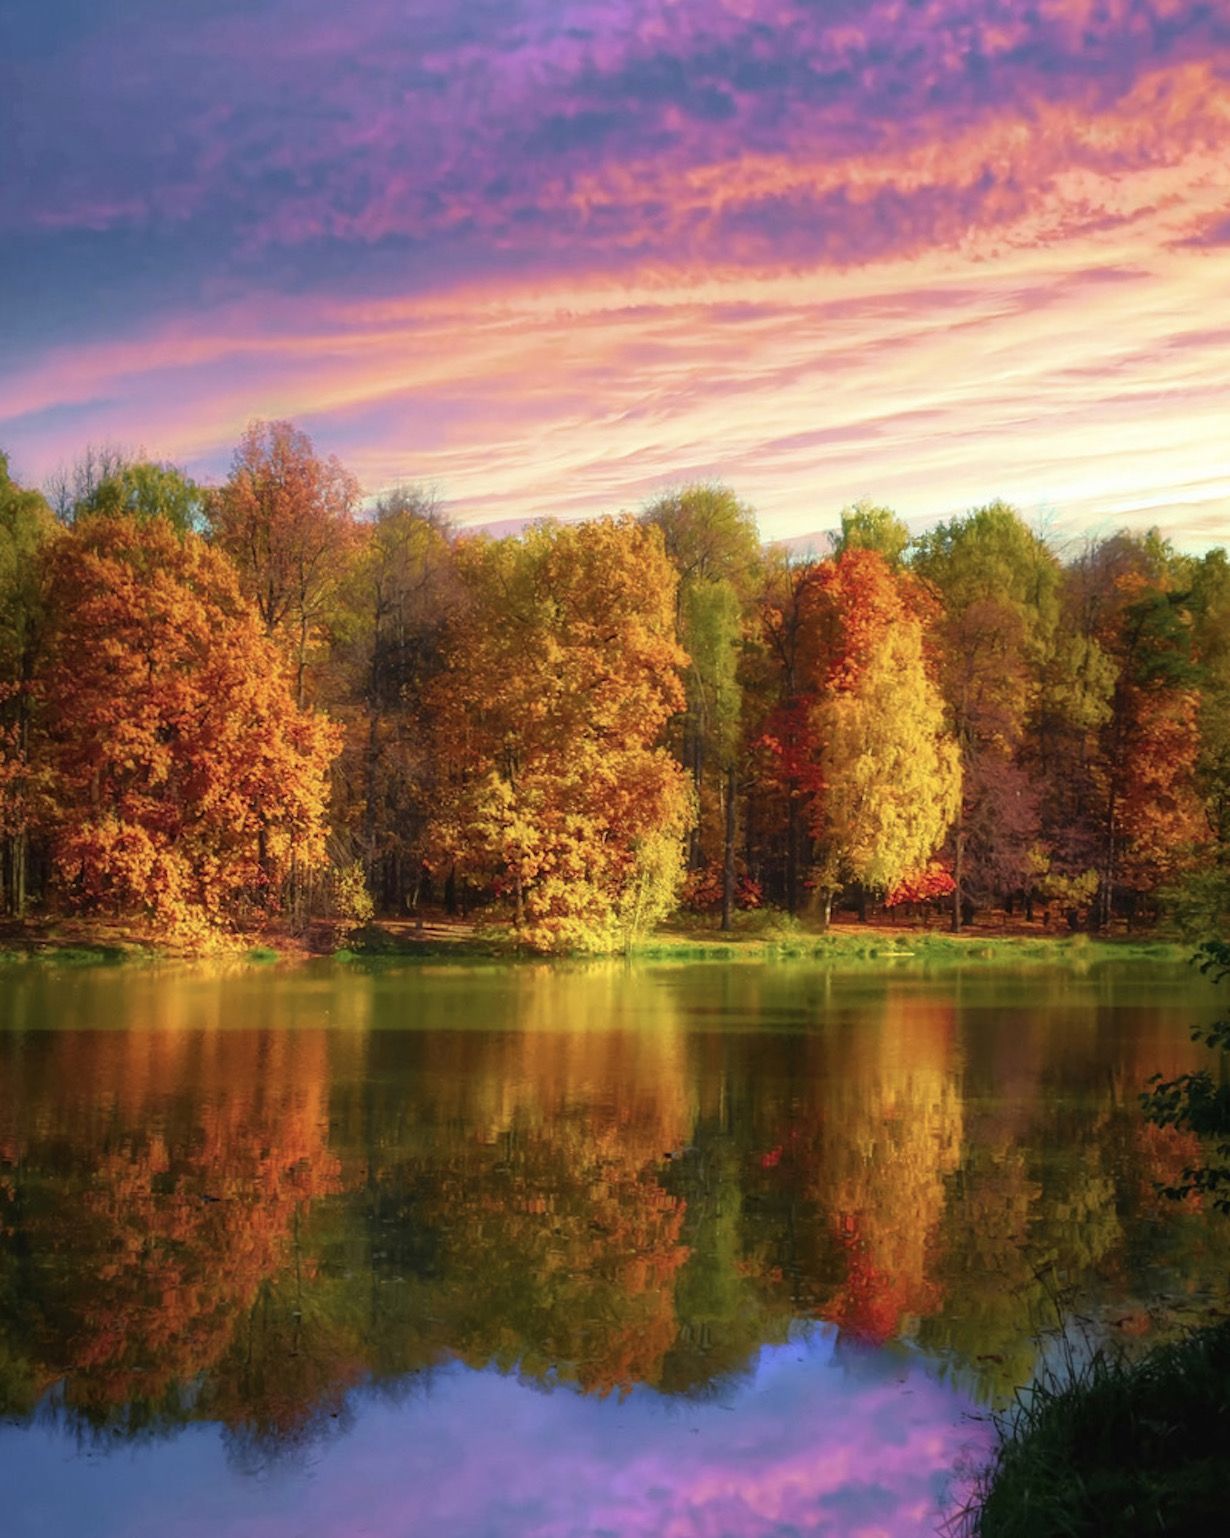 золотая осень, gold autumn, природа, пейзаж, landscape, nature,  осень, autumn, Julia Kaissa